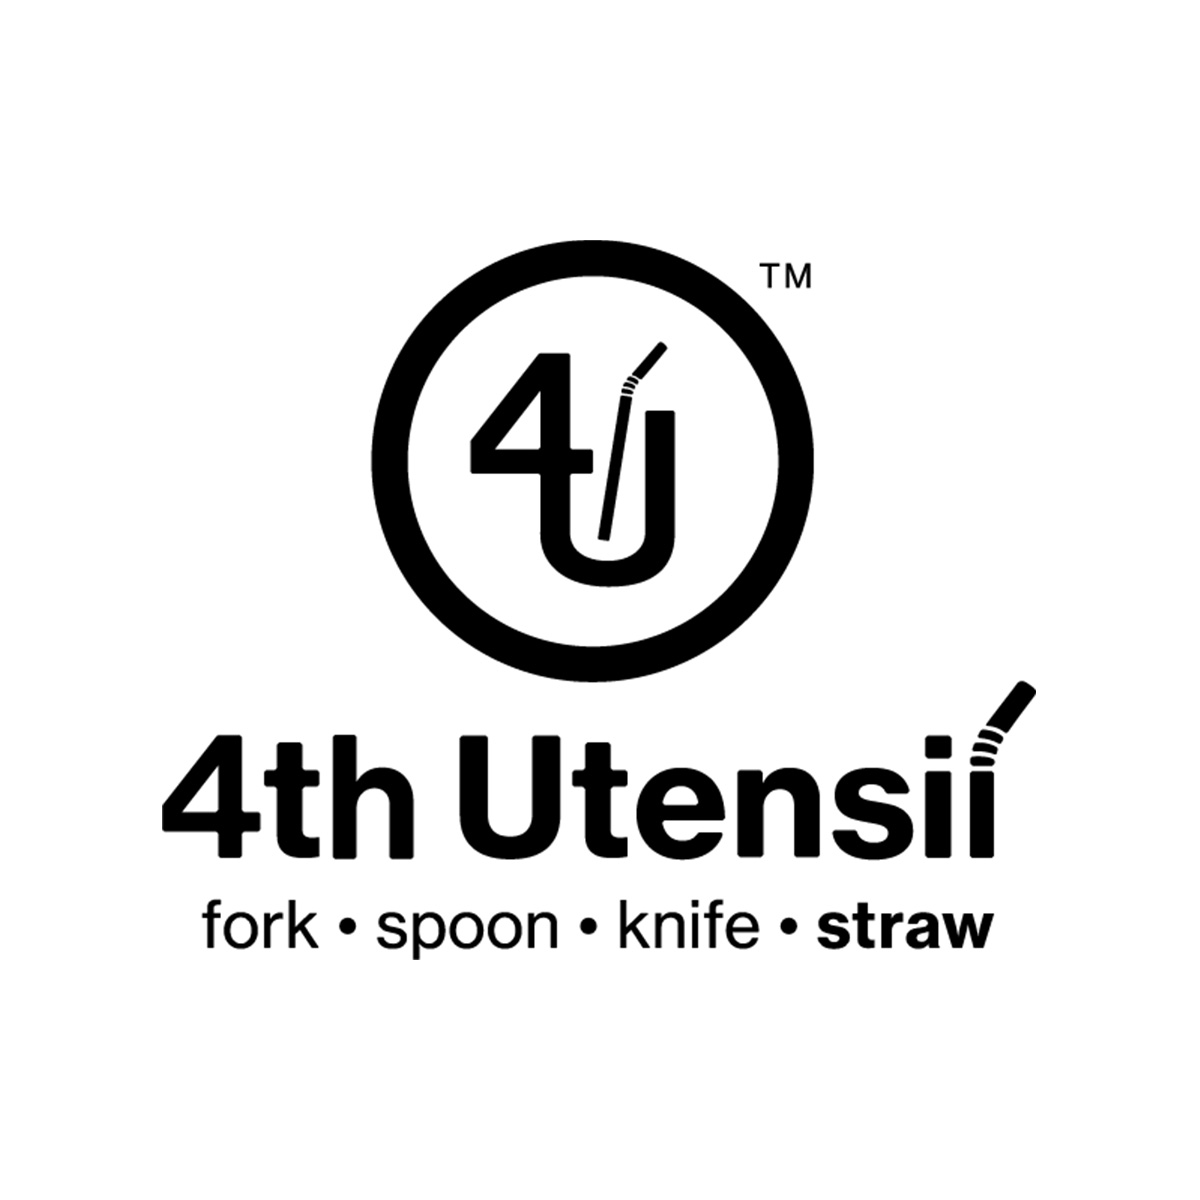 4th utensil logo